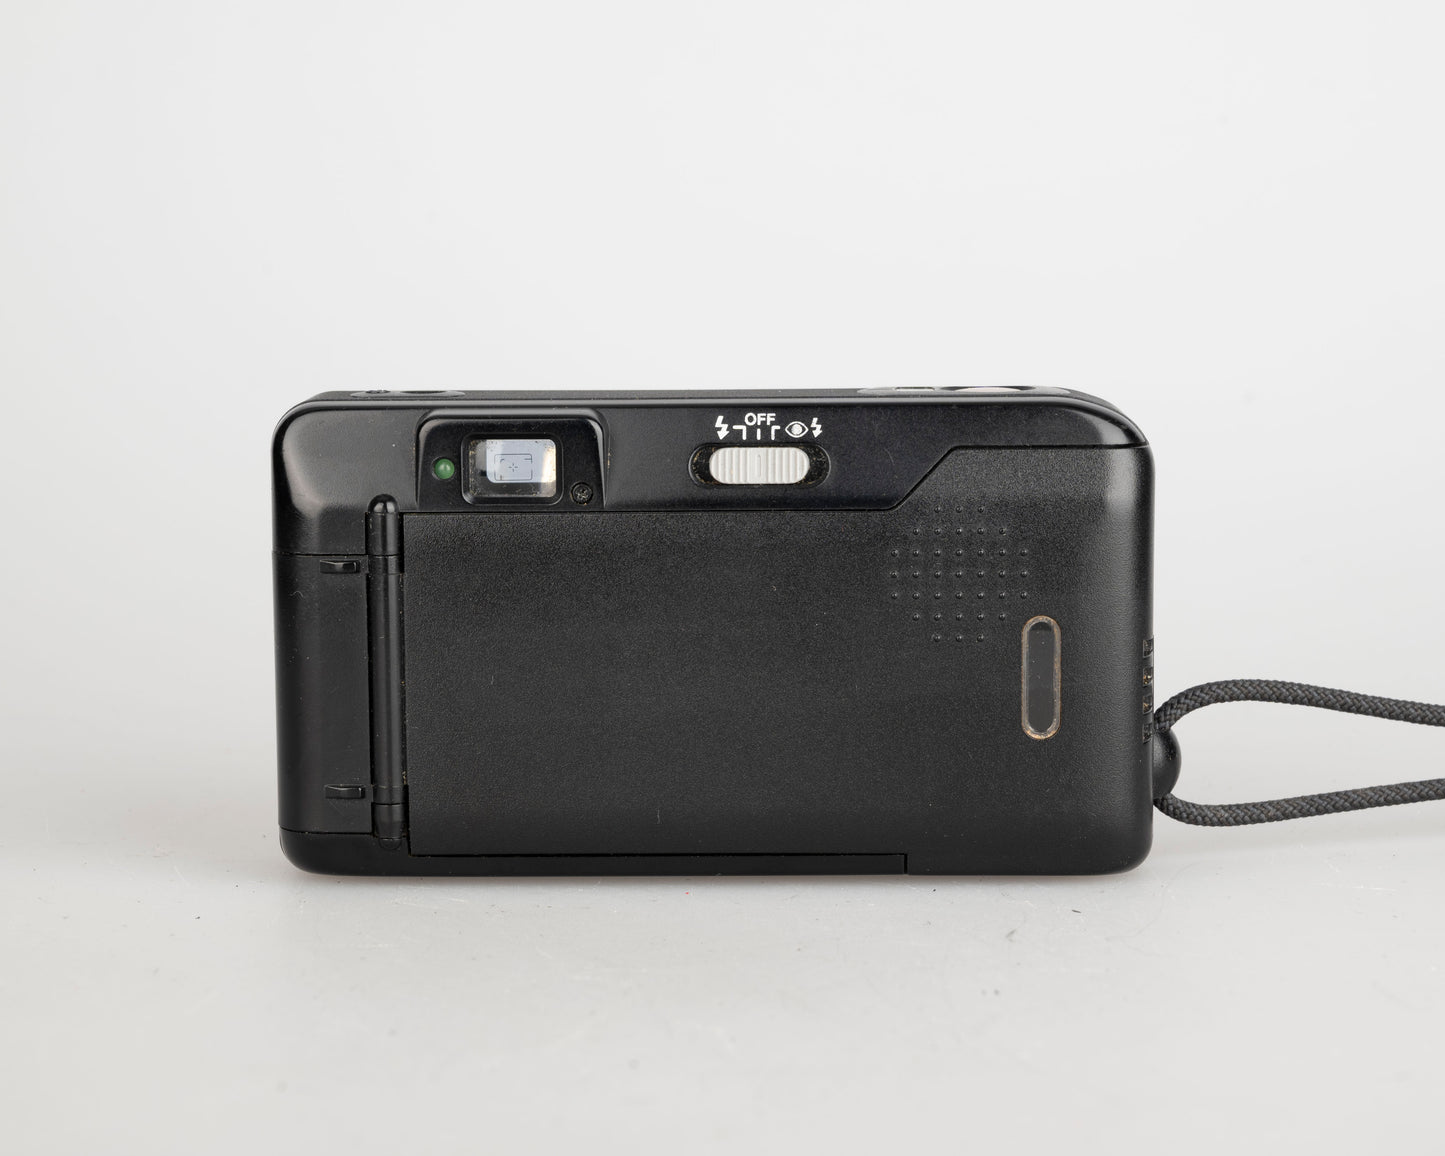 Canon Sure Shot Max 35mm film camera w/case (serial 34512042)